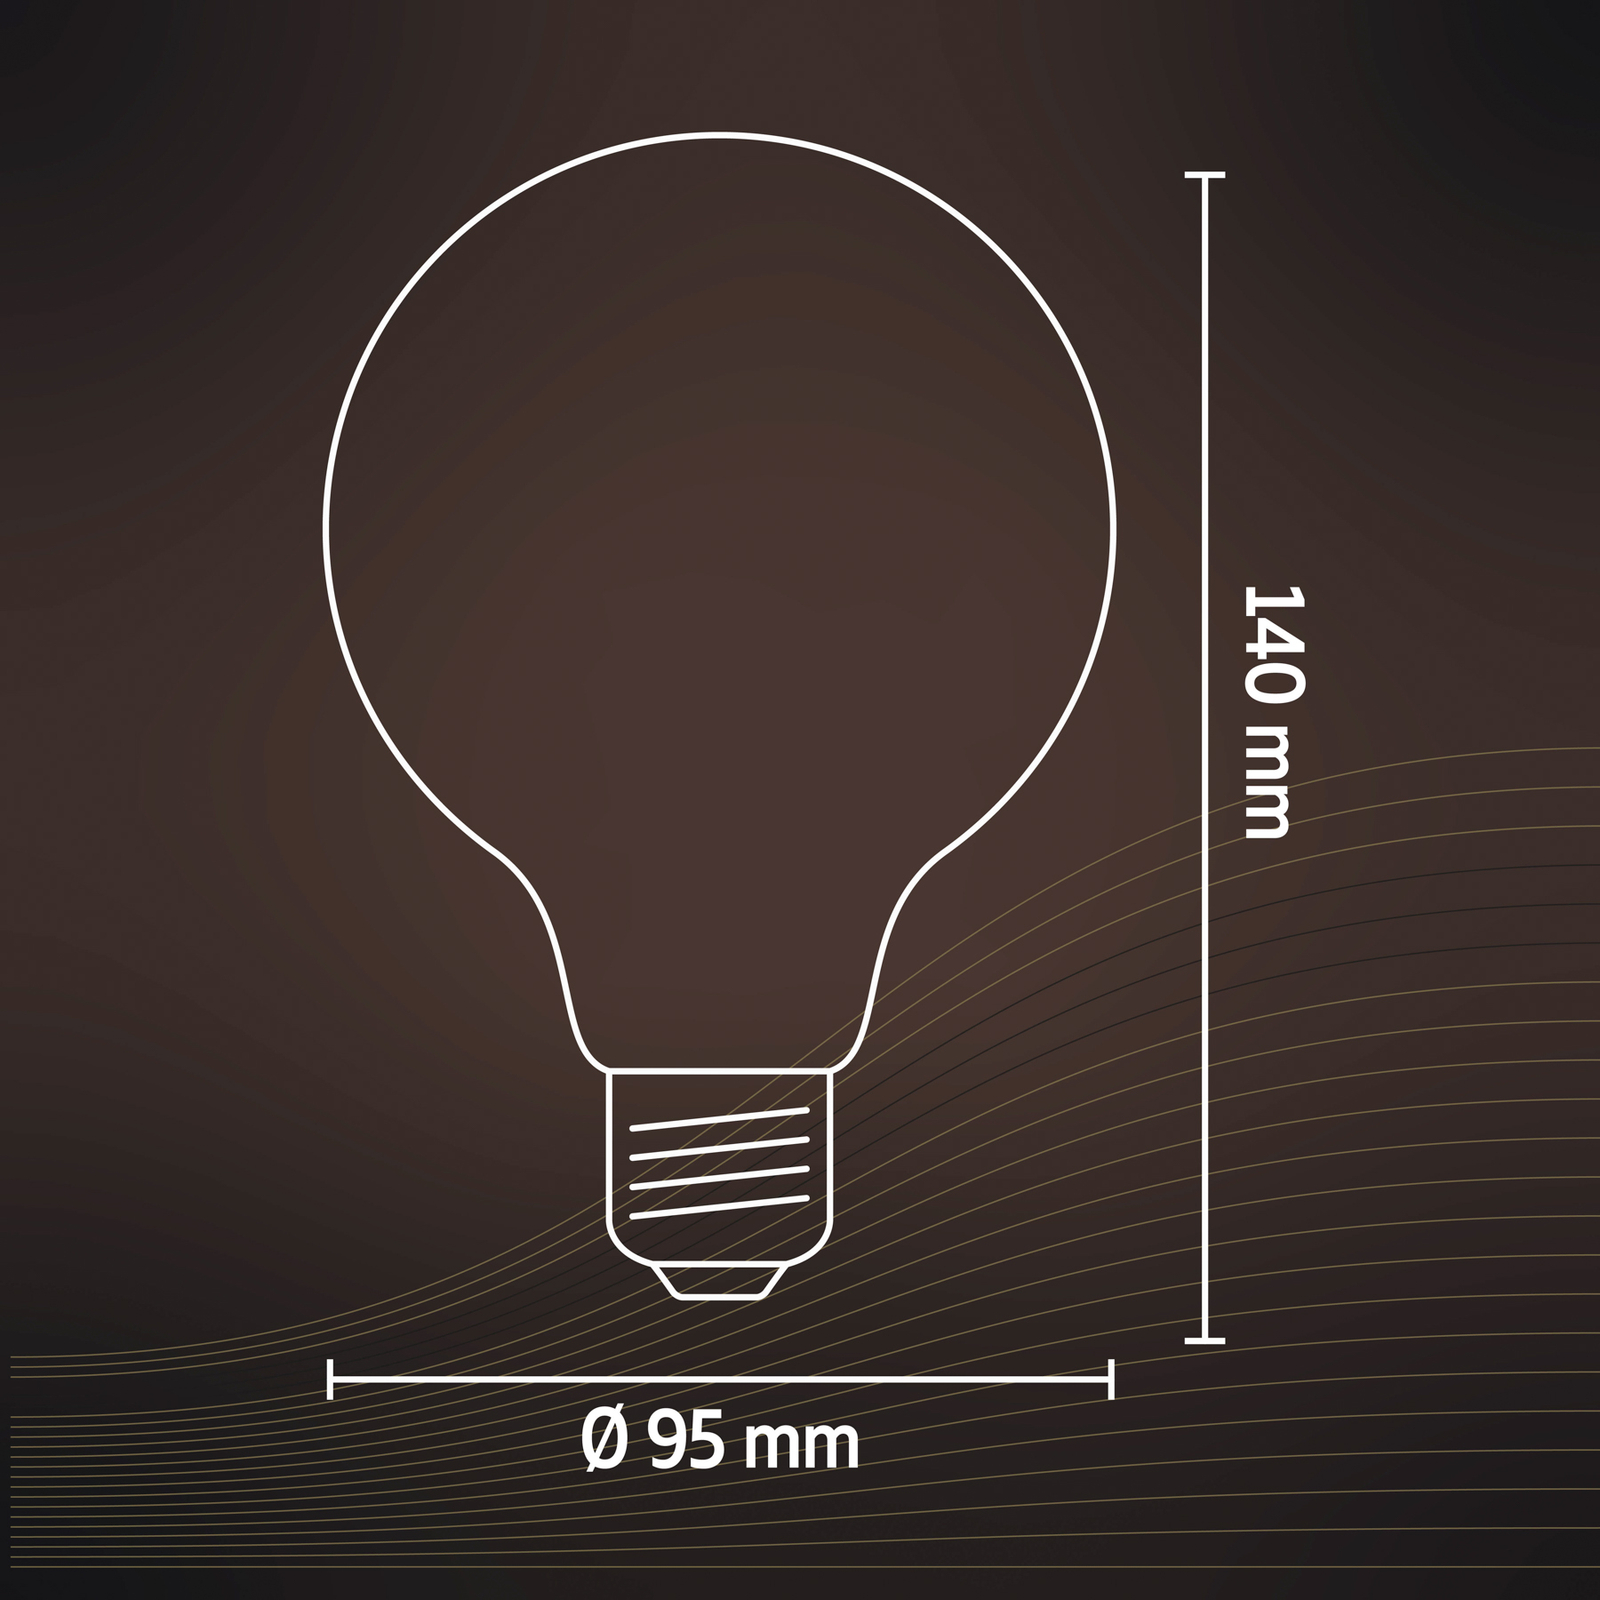 Calex E27 G95 3,8W LED-Filamento Flex 821 gold dim